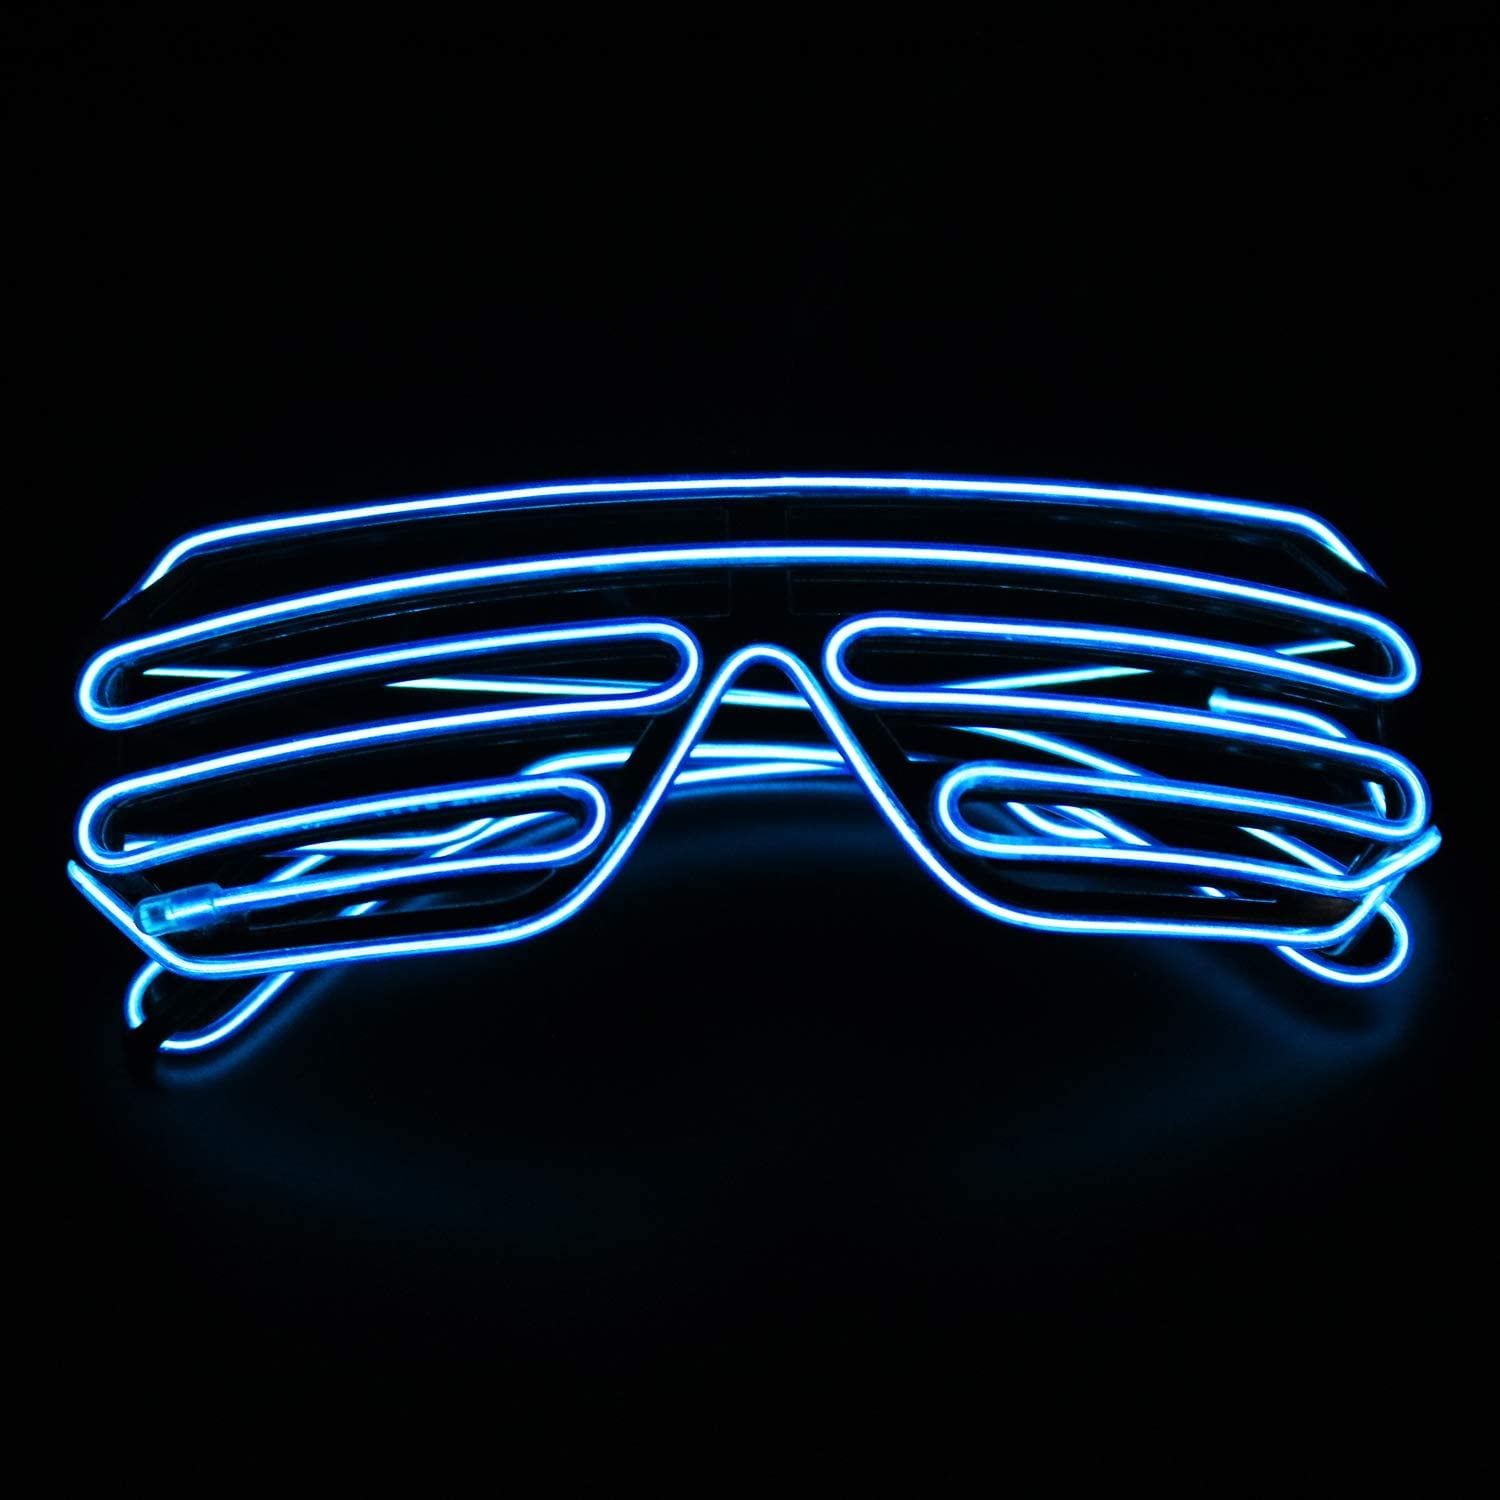 LED-Brille Leuchtbrille Partybrille Festival Glases 